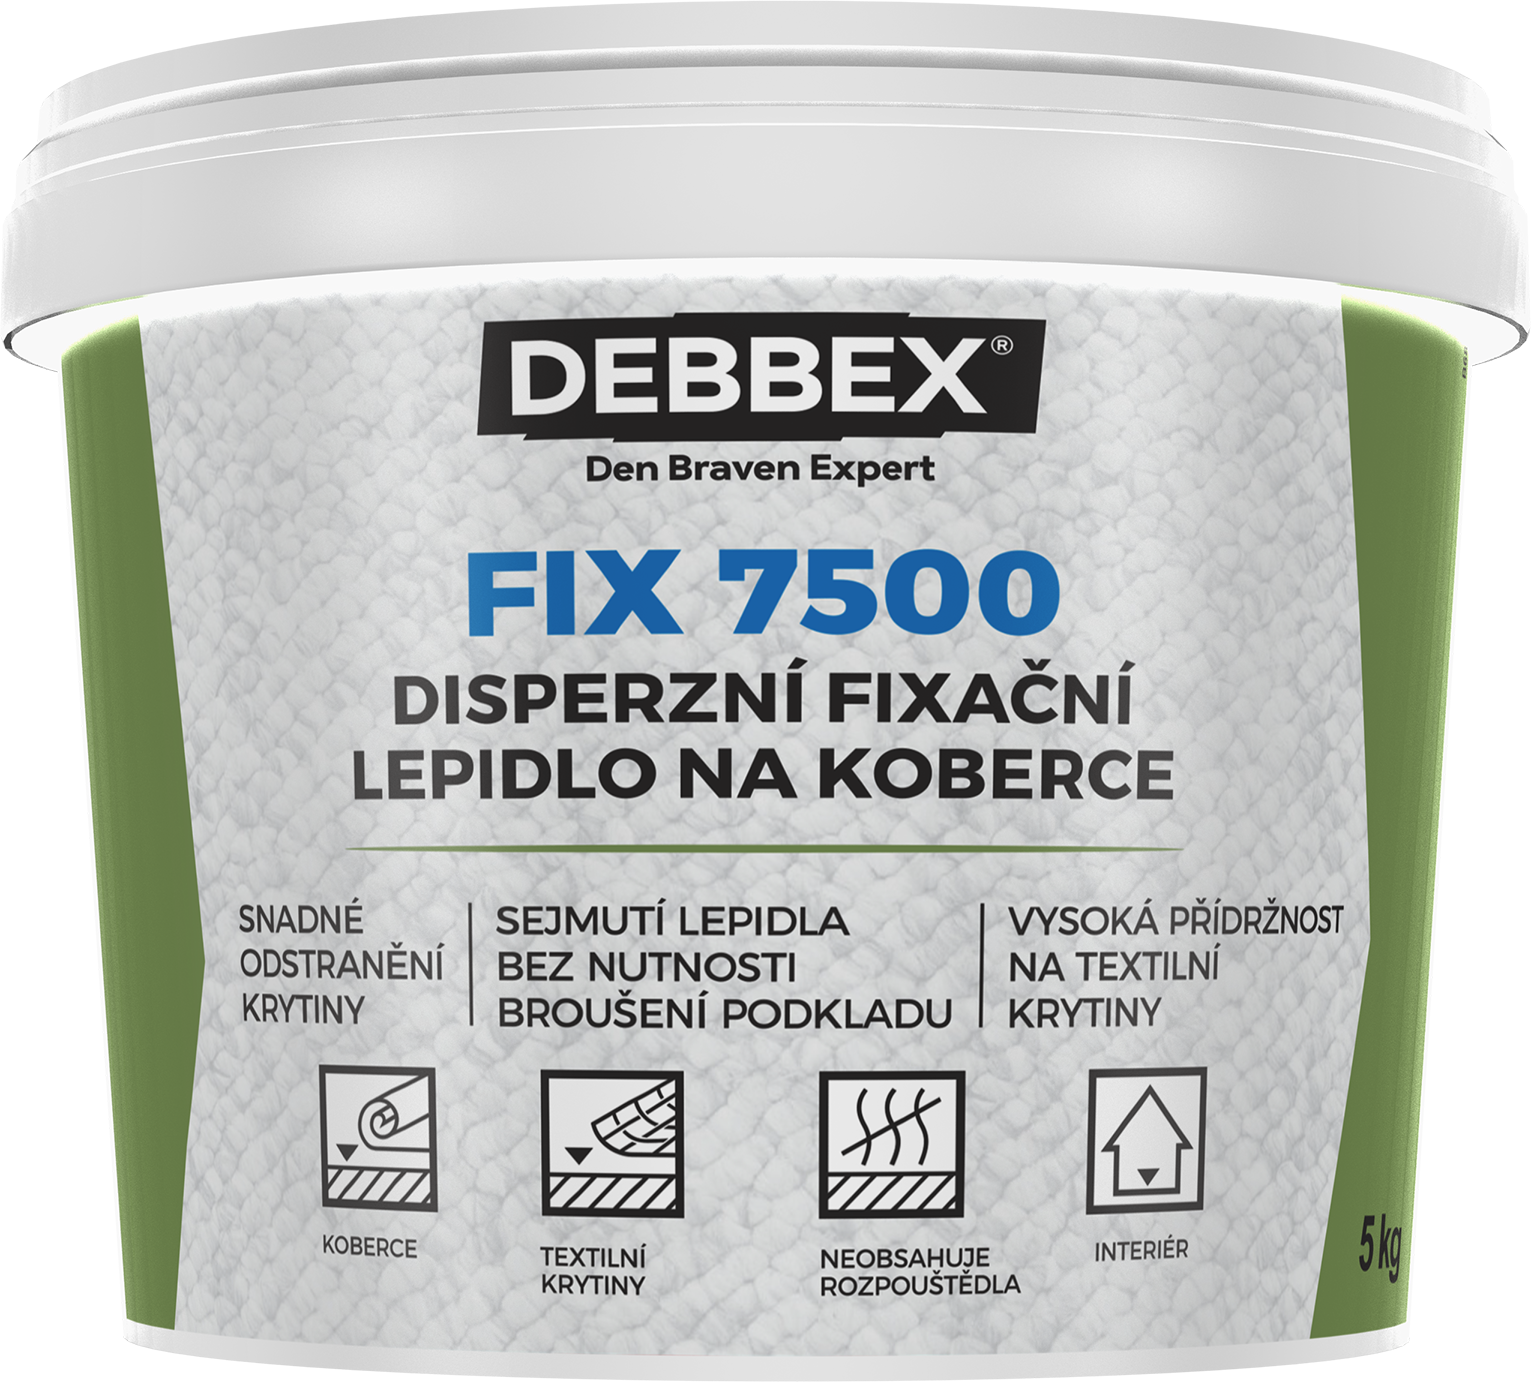 Disperzní fixační lepidlo na koberce DEBBEX FIX 7500 balení 10kg